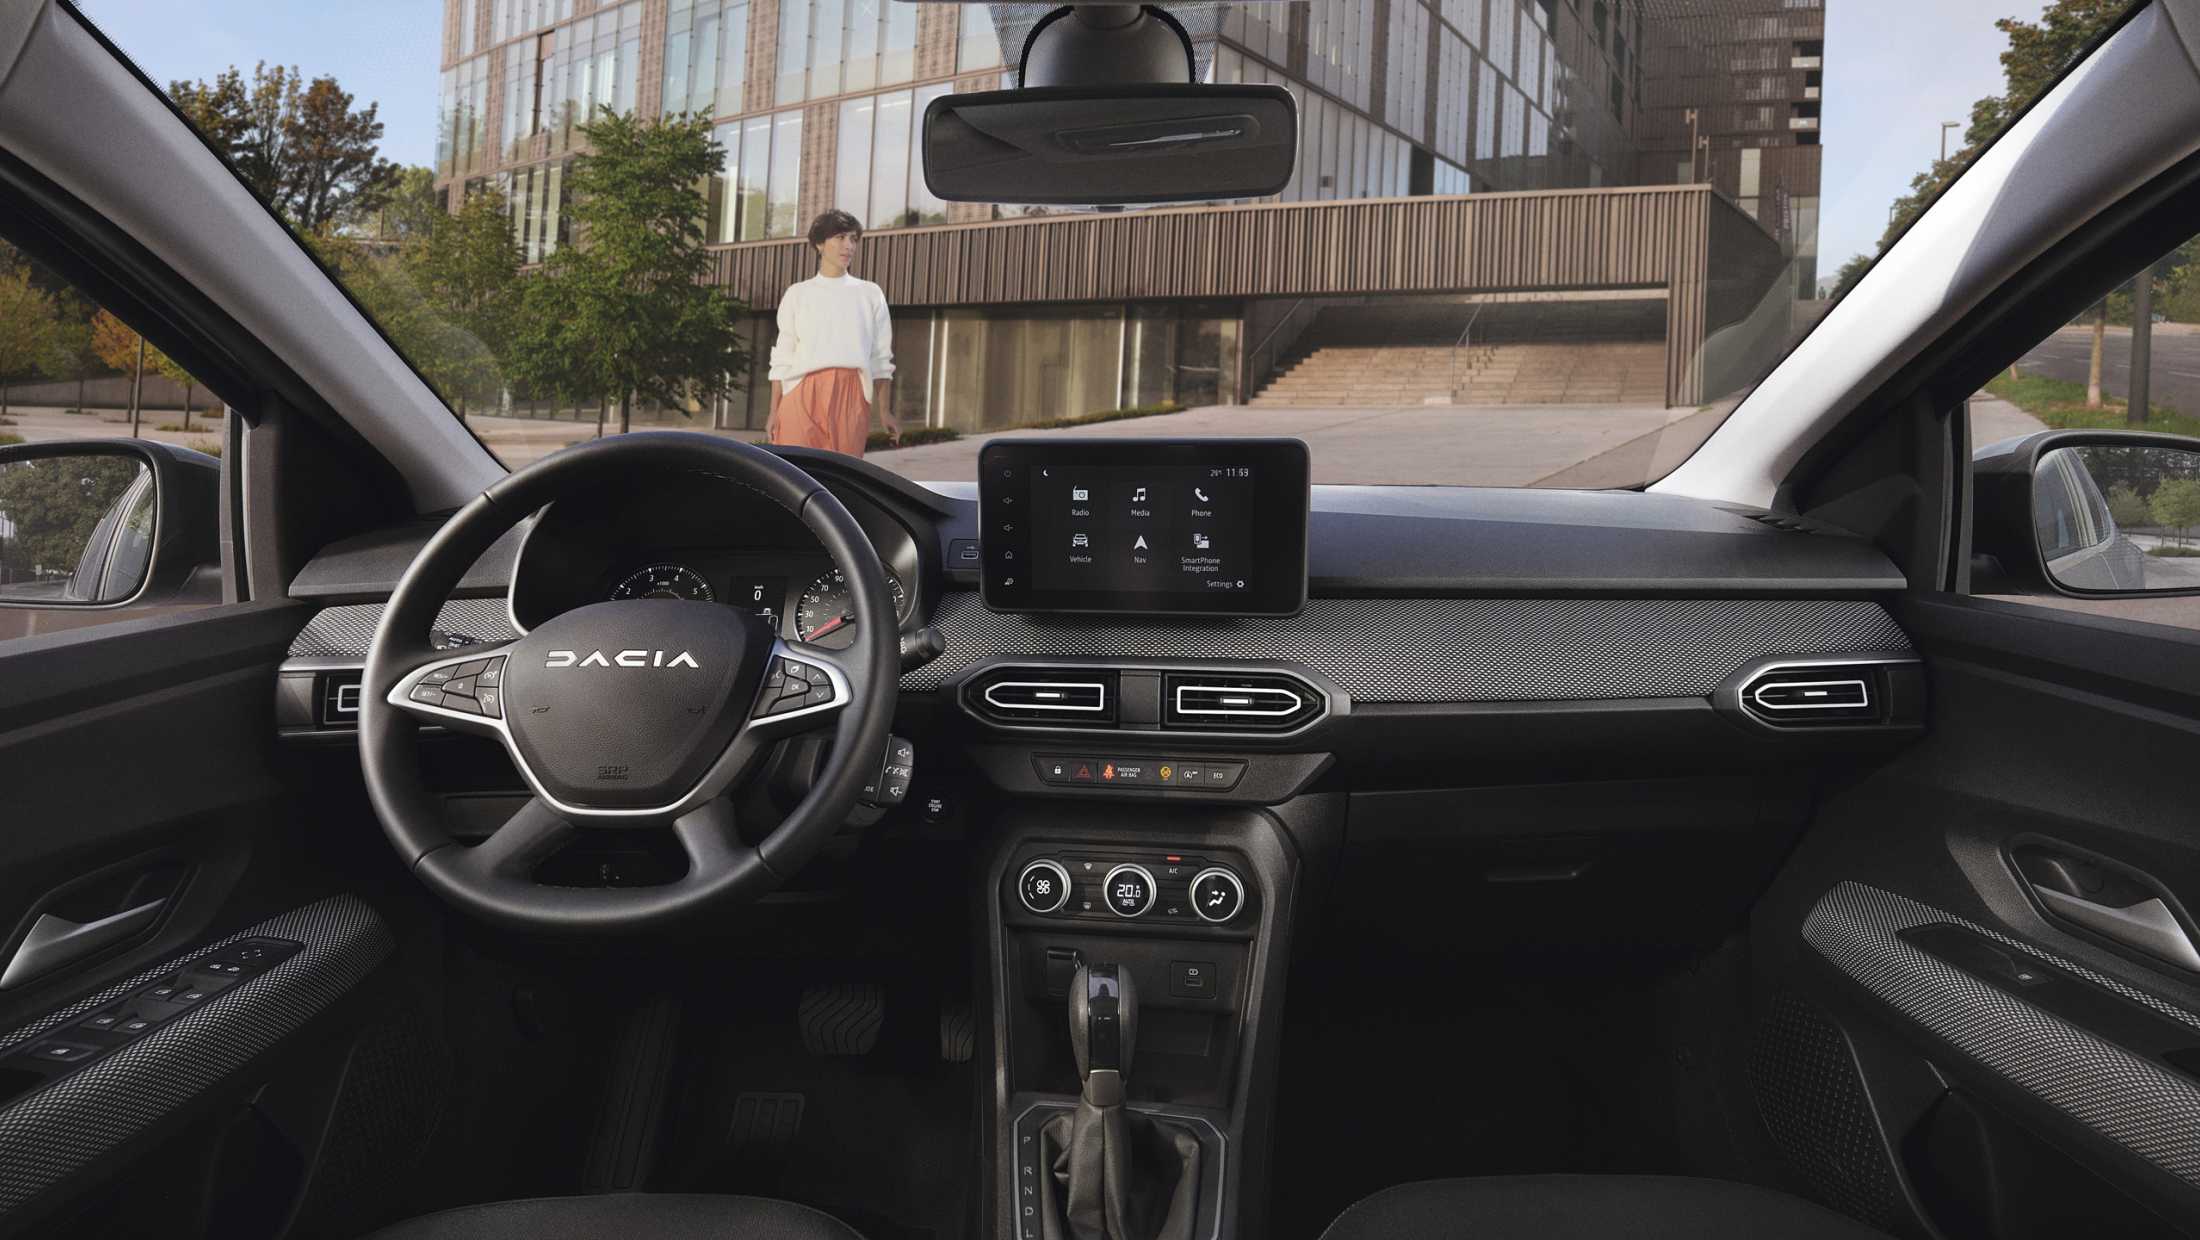 Dacia Sandero - Alle bedieningselementen op handig bereikbare plekken. 8-inch touchscreen met navigatie en draadloze Smartphone